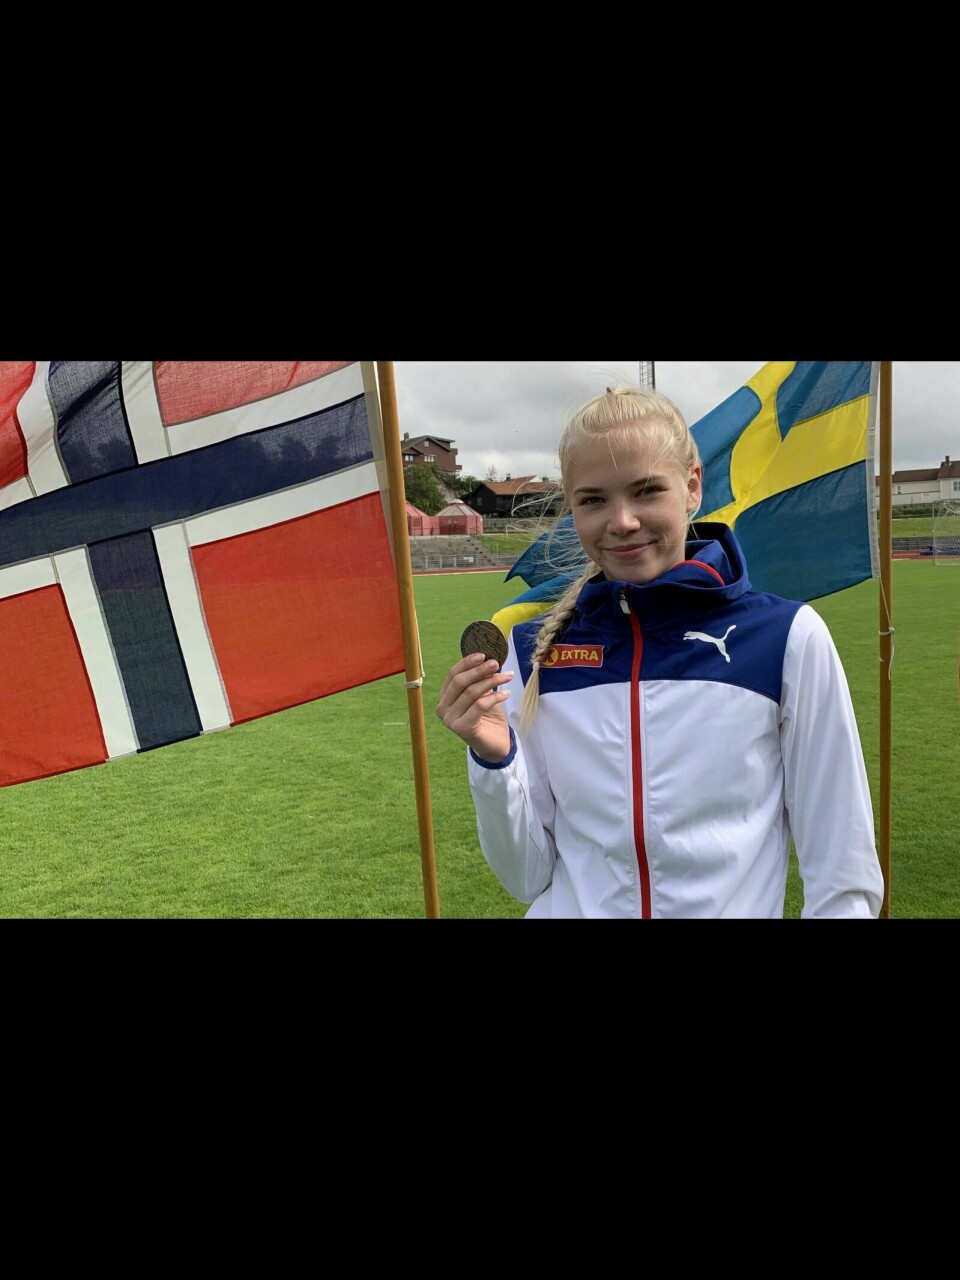 LANDSLAG: Marie Brekke vant medalje under juniorlandskampen sist sommer. Nå har hun fått plass på U23-landslaget vårt. Foto: Privat